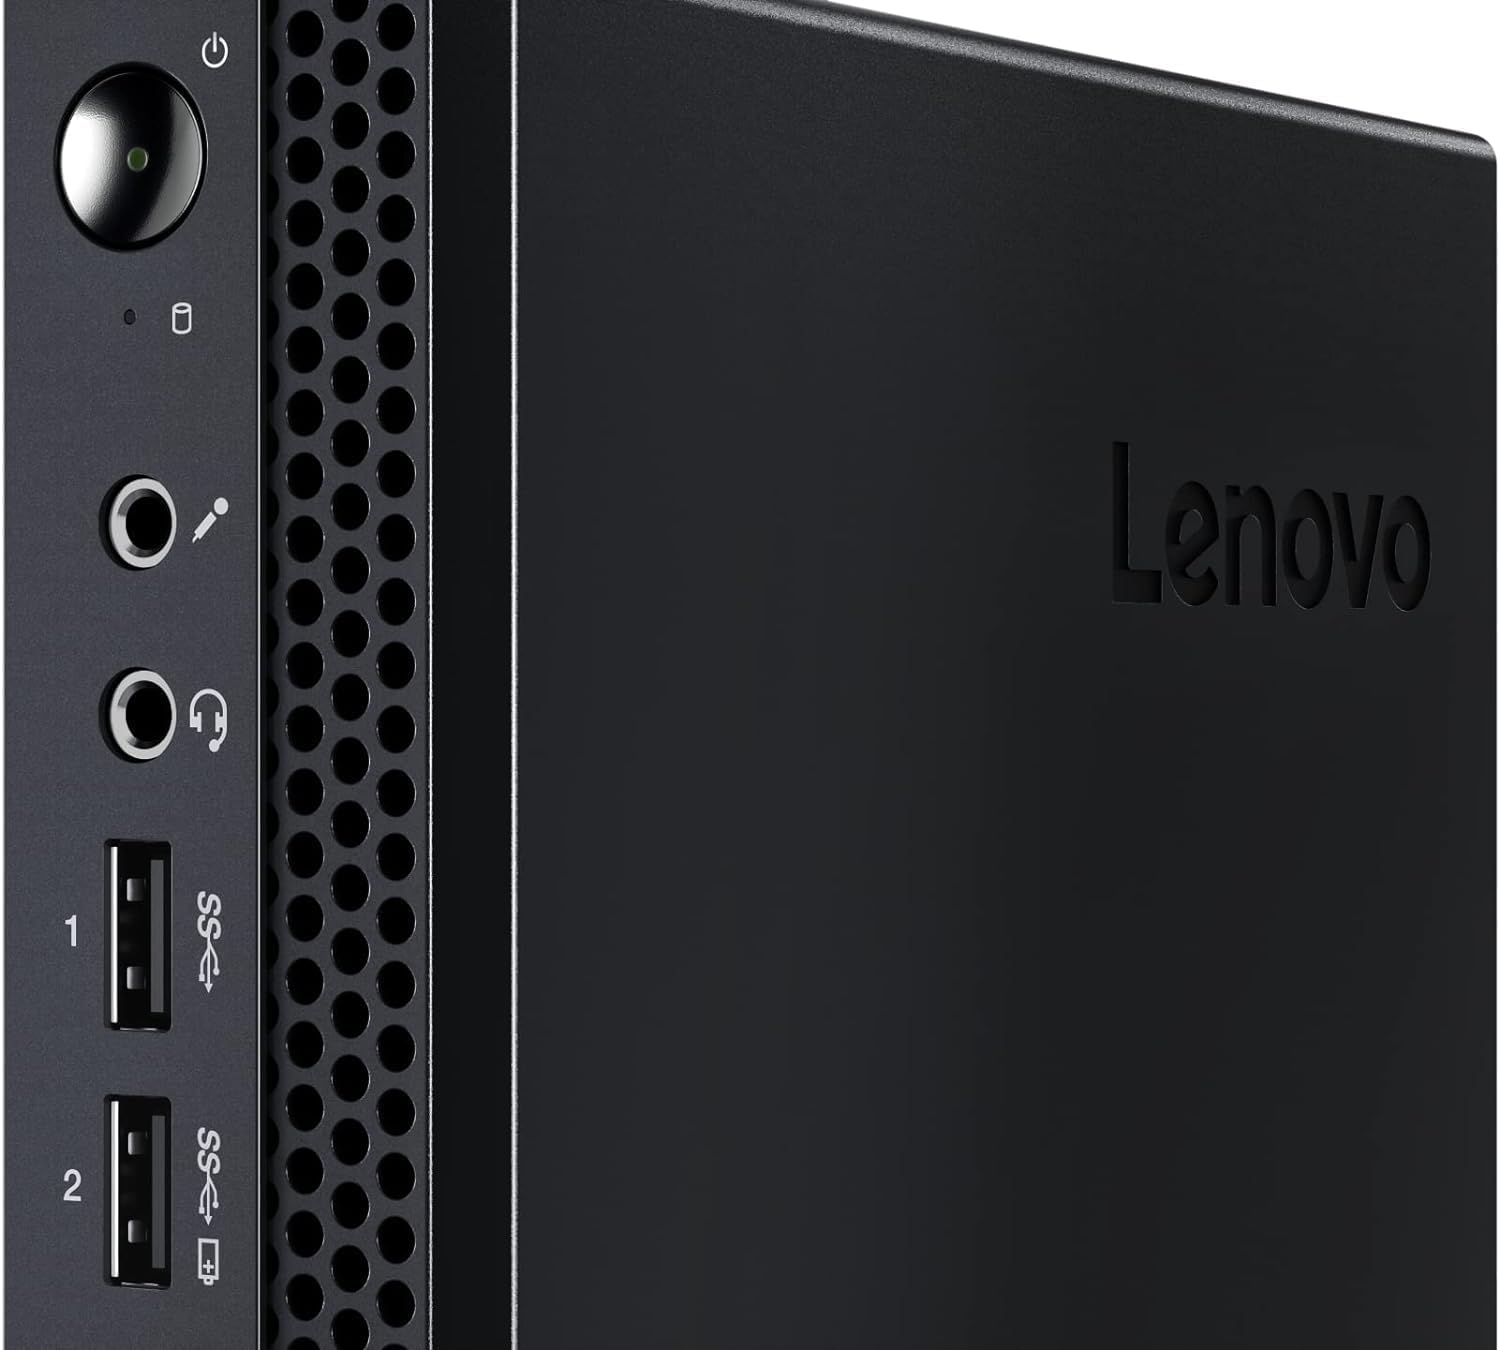 Lenovo ThinkCentre M625 Mini Desktop PC Black (AMD A4-9120c, 8GB RAM, 512GB PCIe SSD, AMD Radeon, AC WiFi, Bluetooth 5.1, 6 USB Ports, 2 Display Port (DP), RJ-45, Win 11 Pro) with DKZ Hub